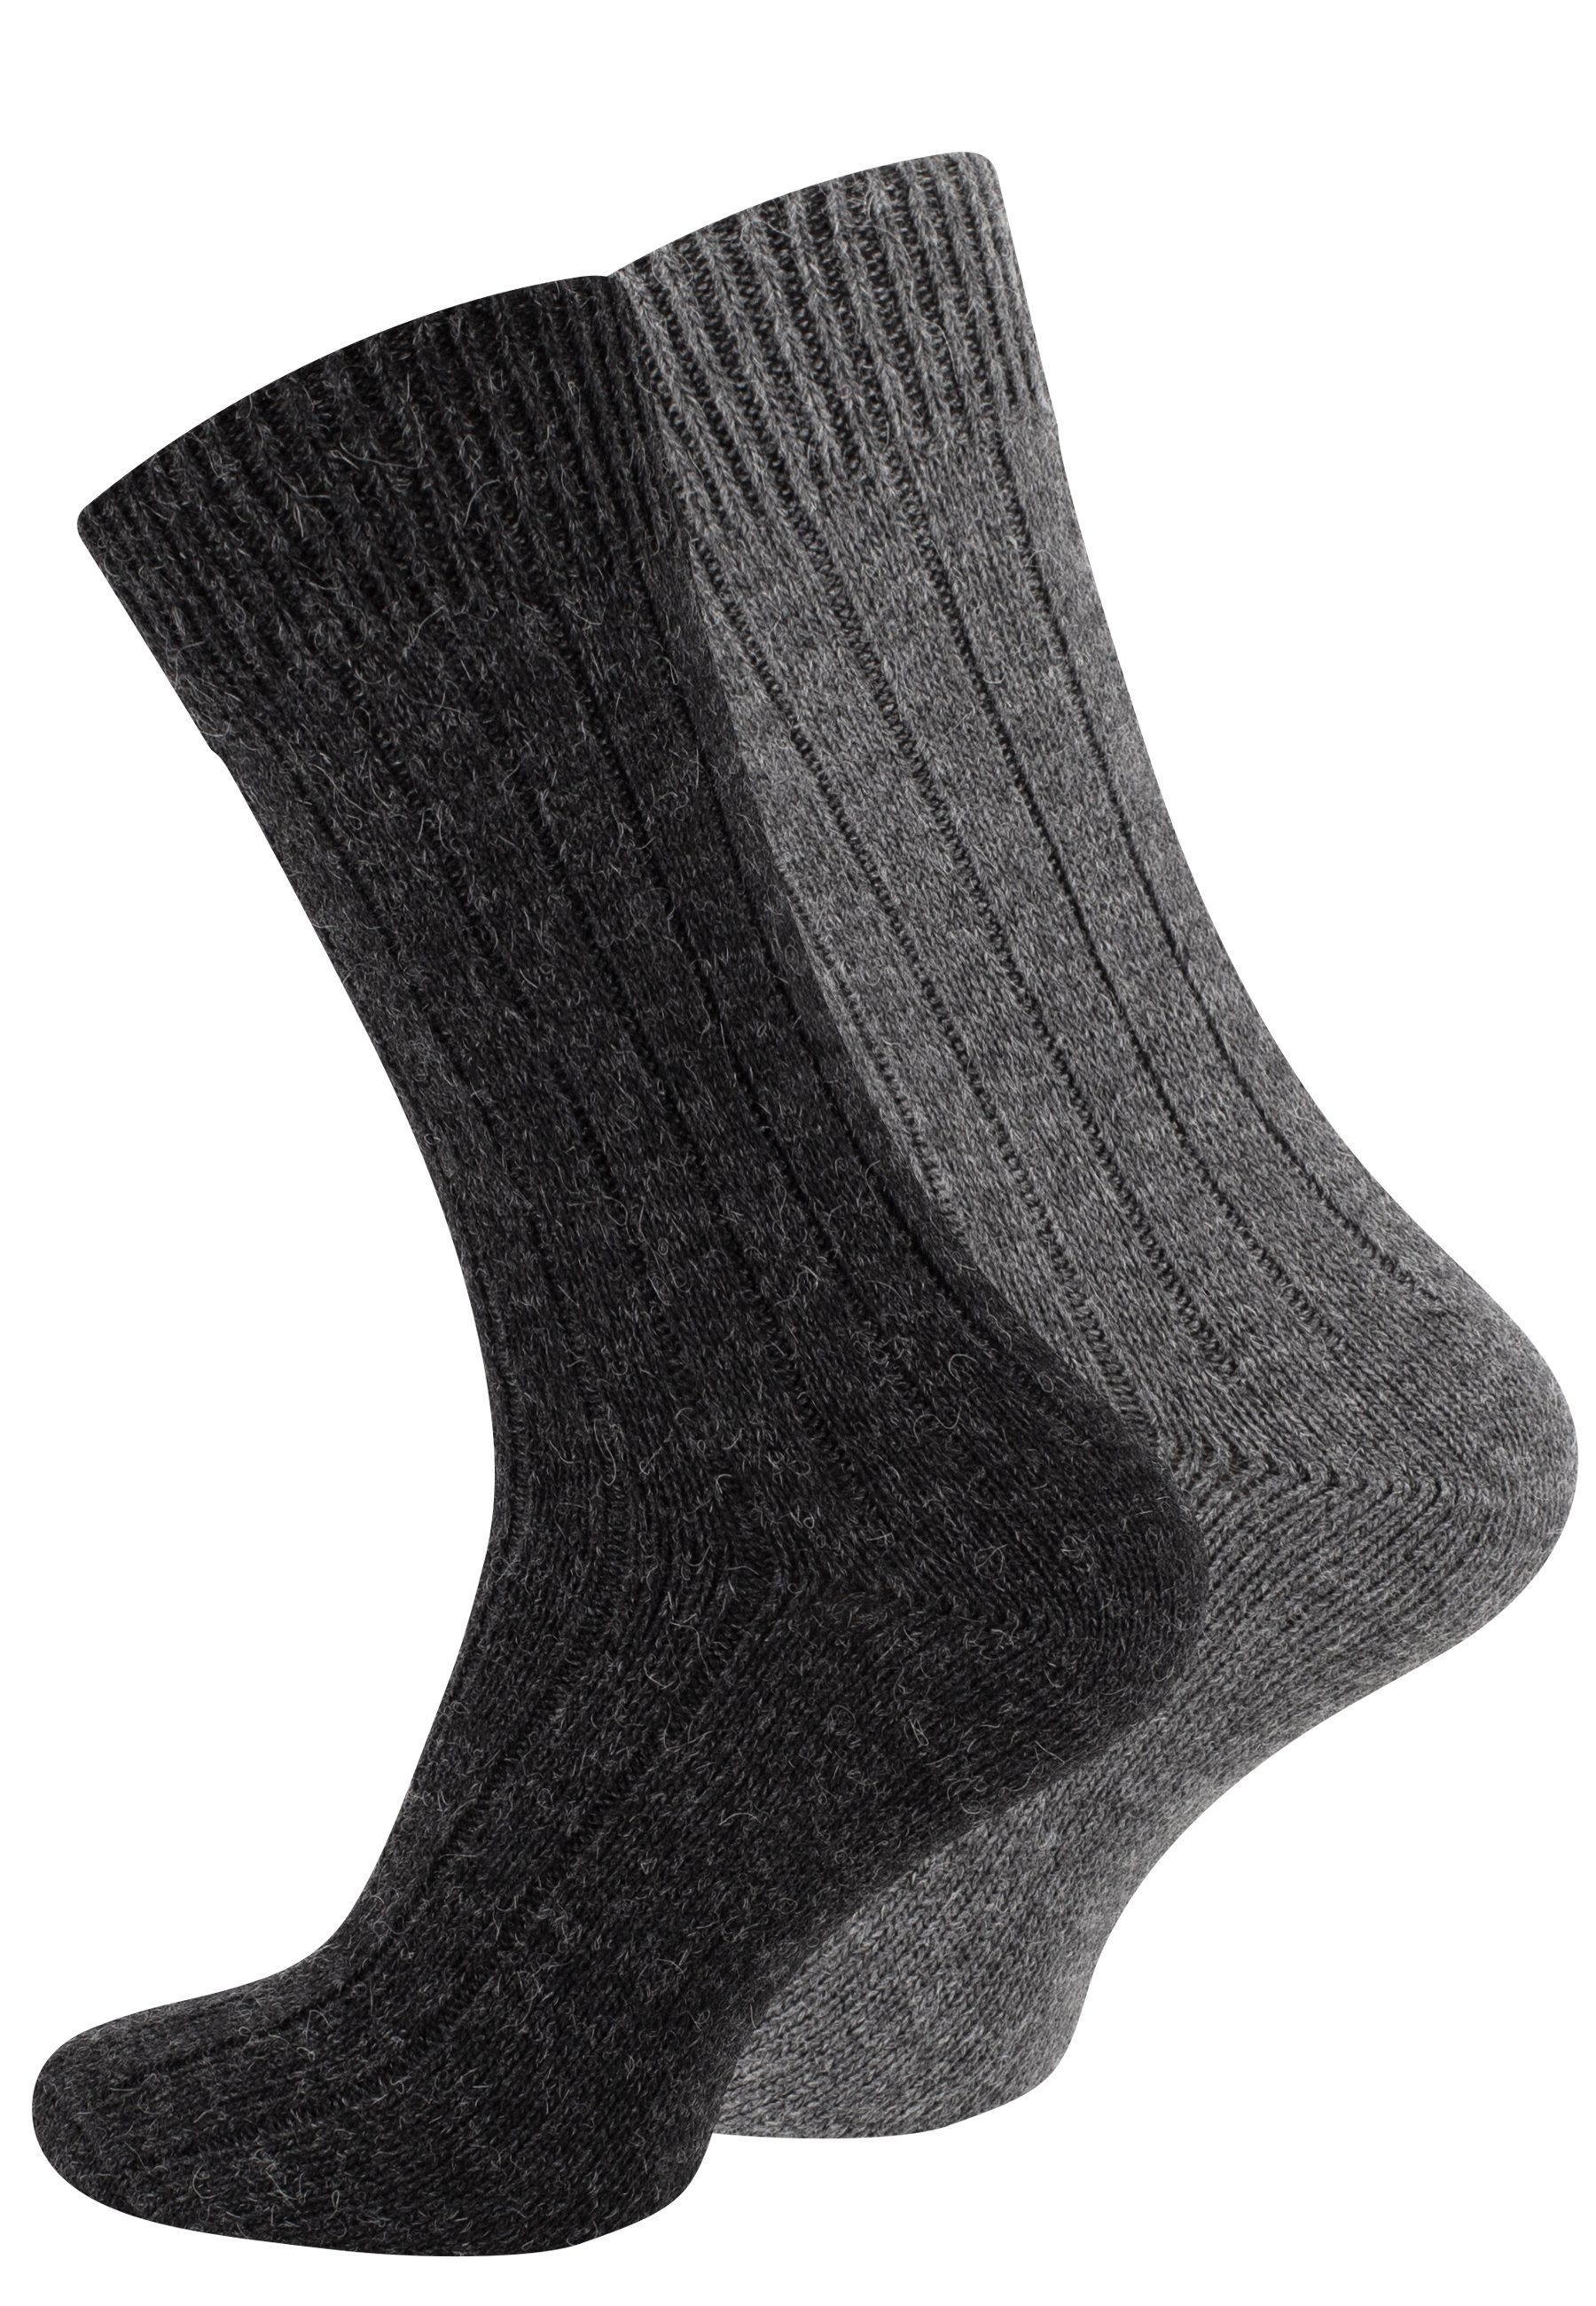 Cotton Prime® Socken Alpaka Socken (2-Paar) ökologisch gefärbt und vorgewaschen anthrazit/grau